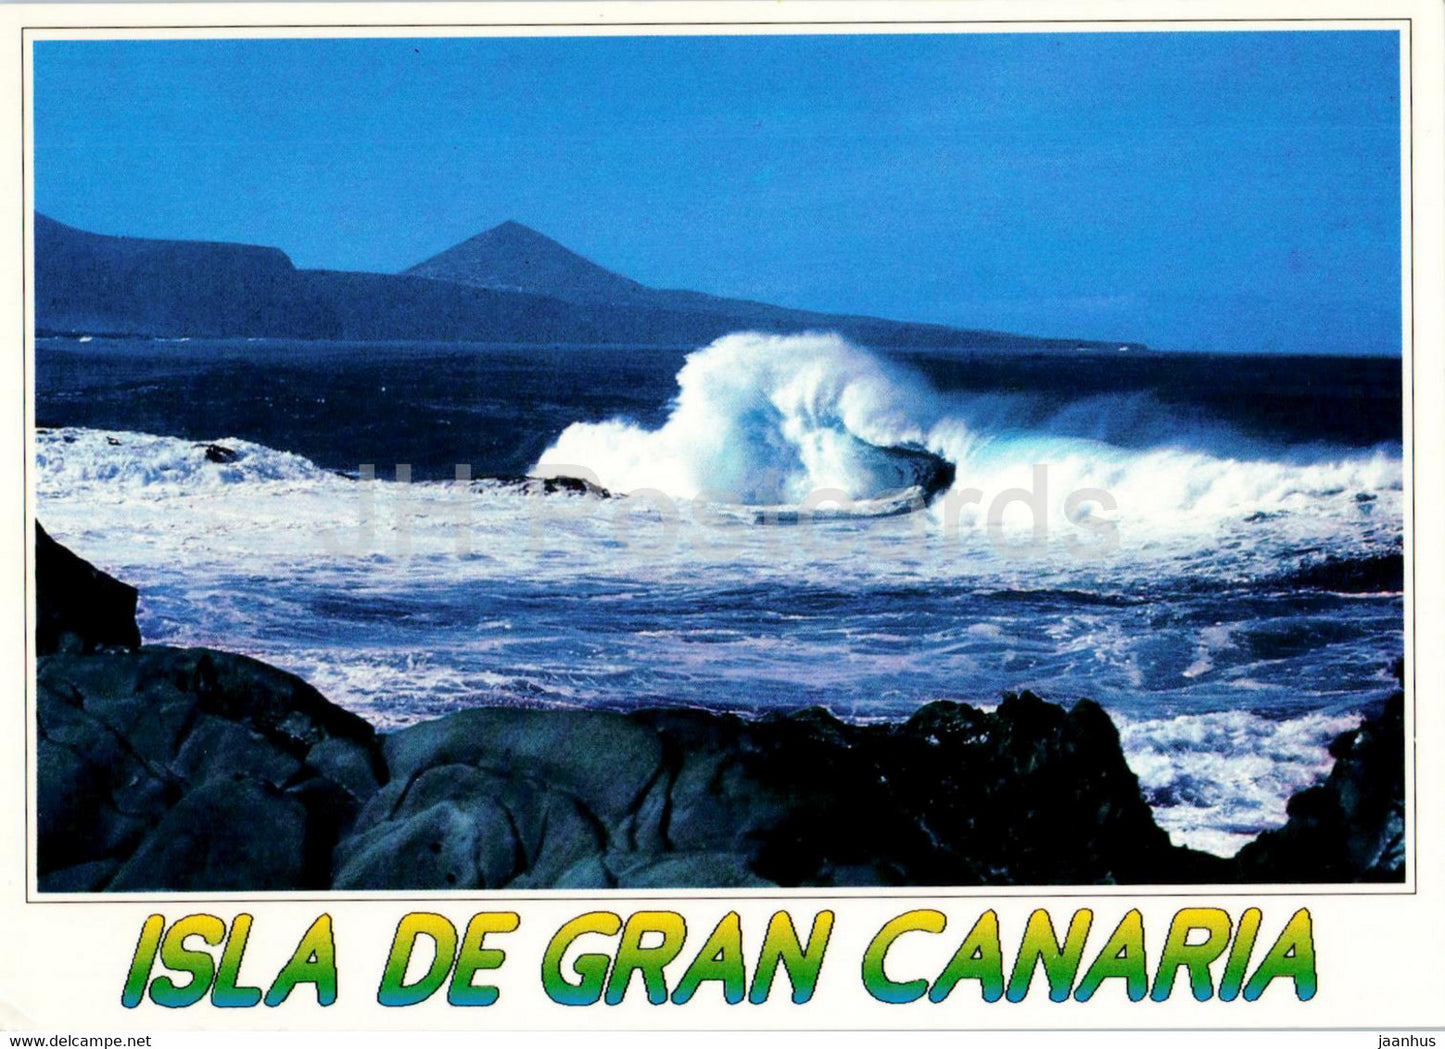 Isla de Gran Canaria - Banaderos - Spain - unused - JH Postcards